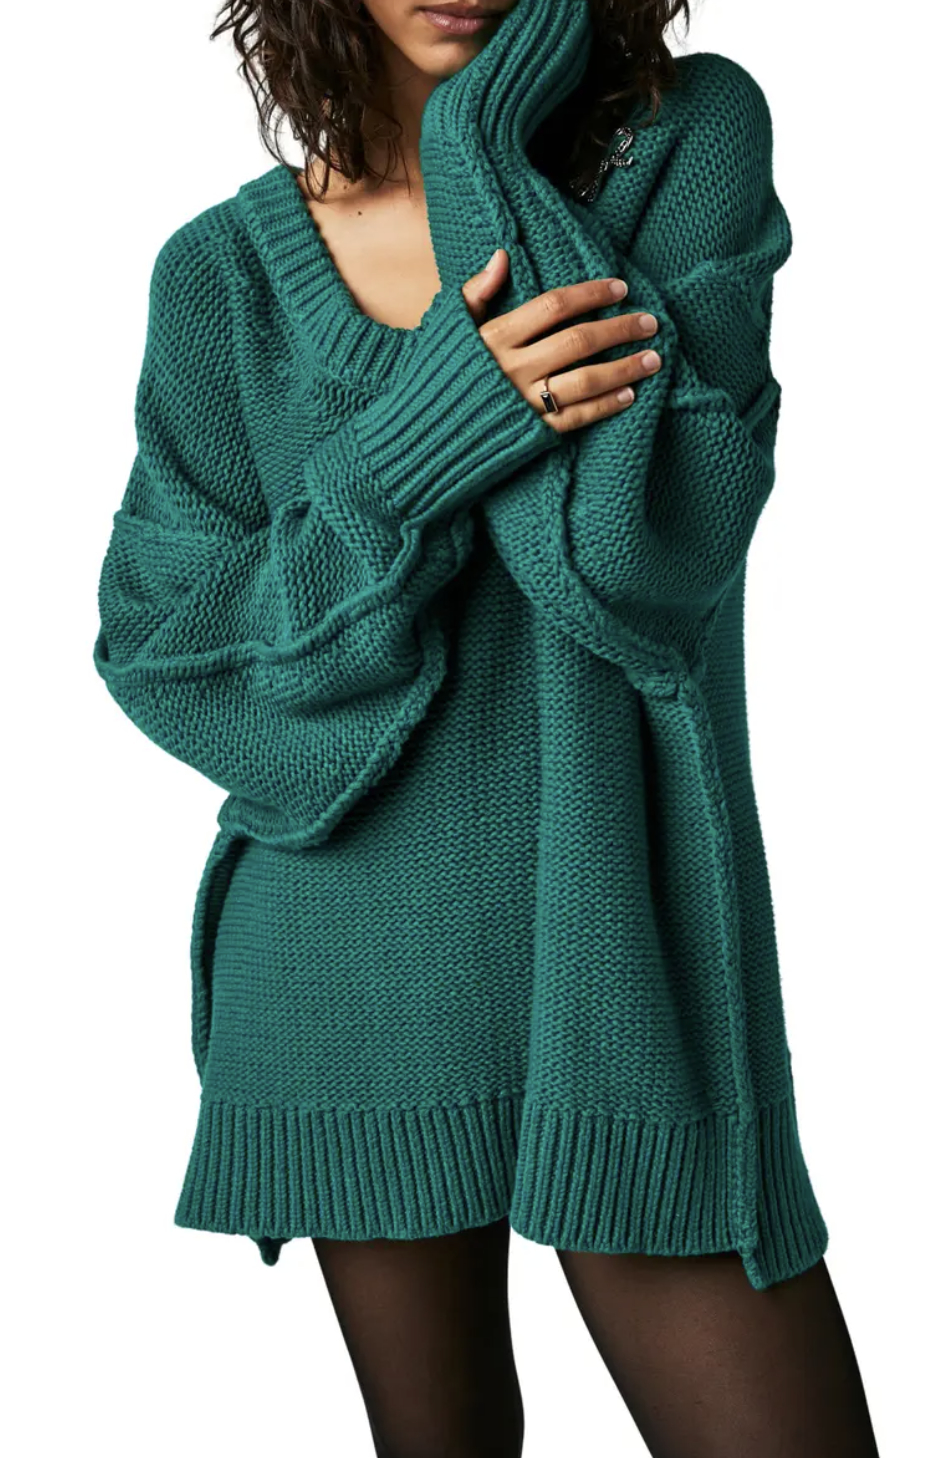 model wearing oversized green v-neck sweater